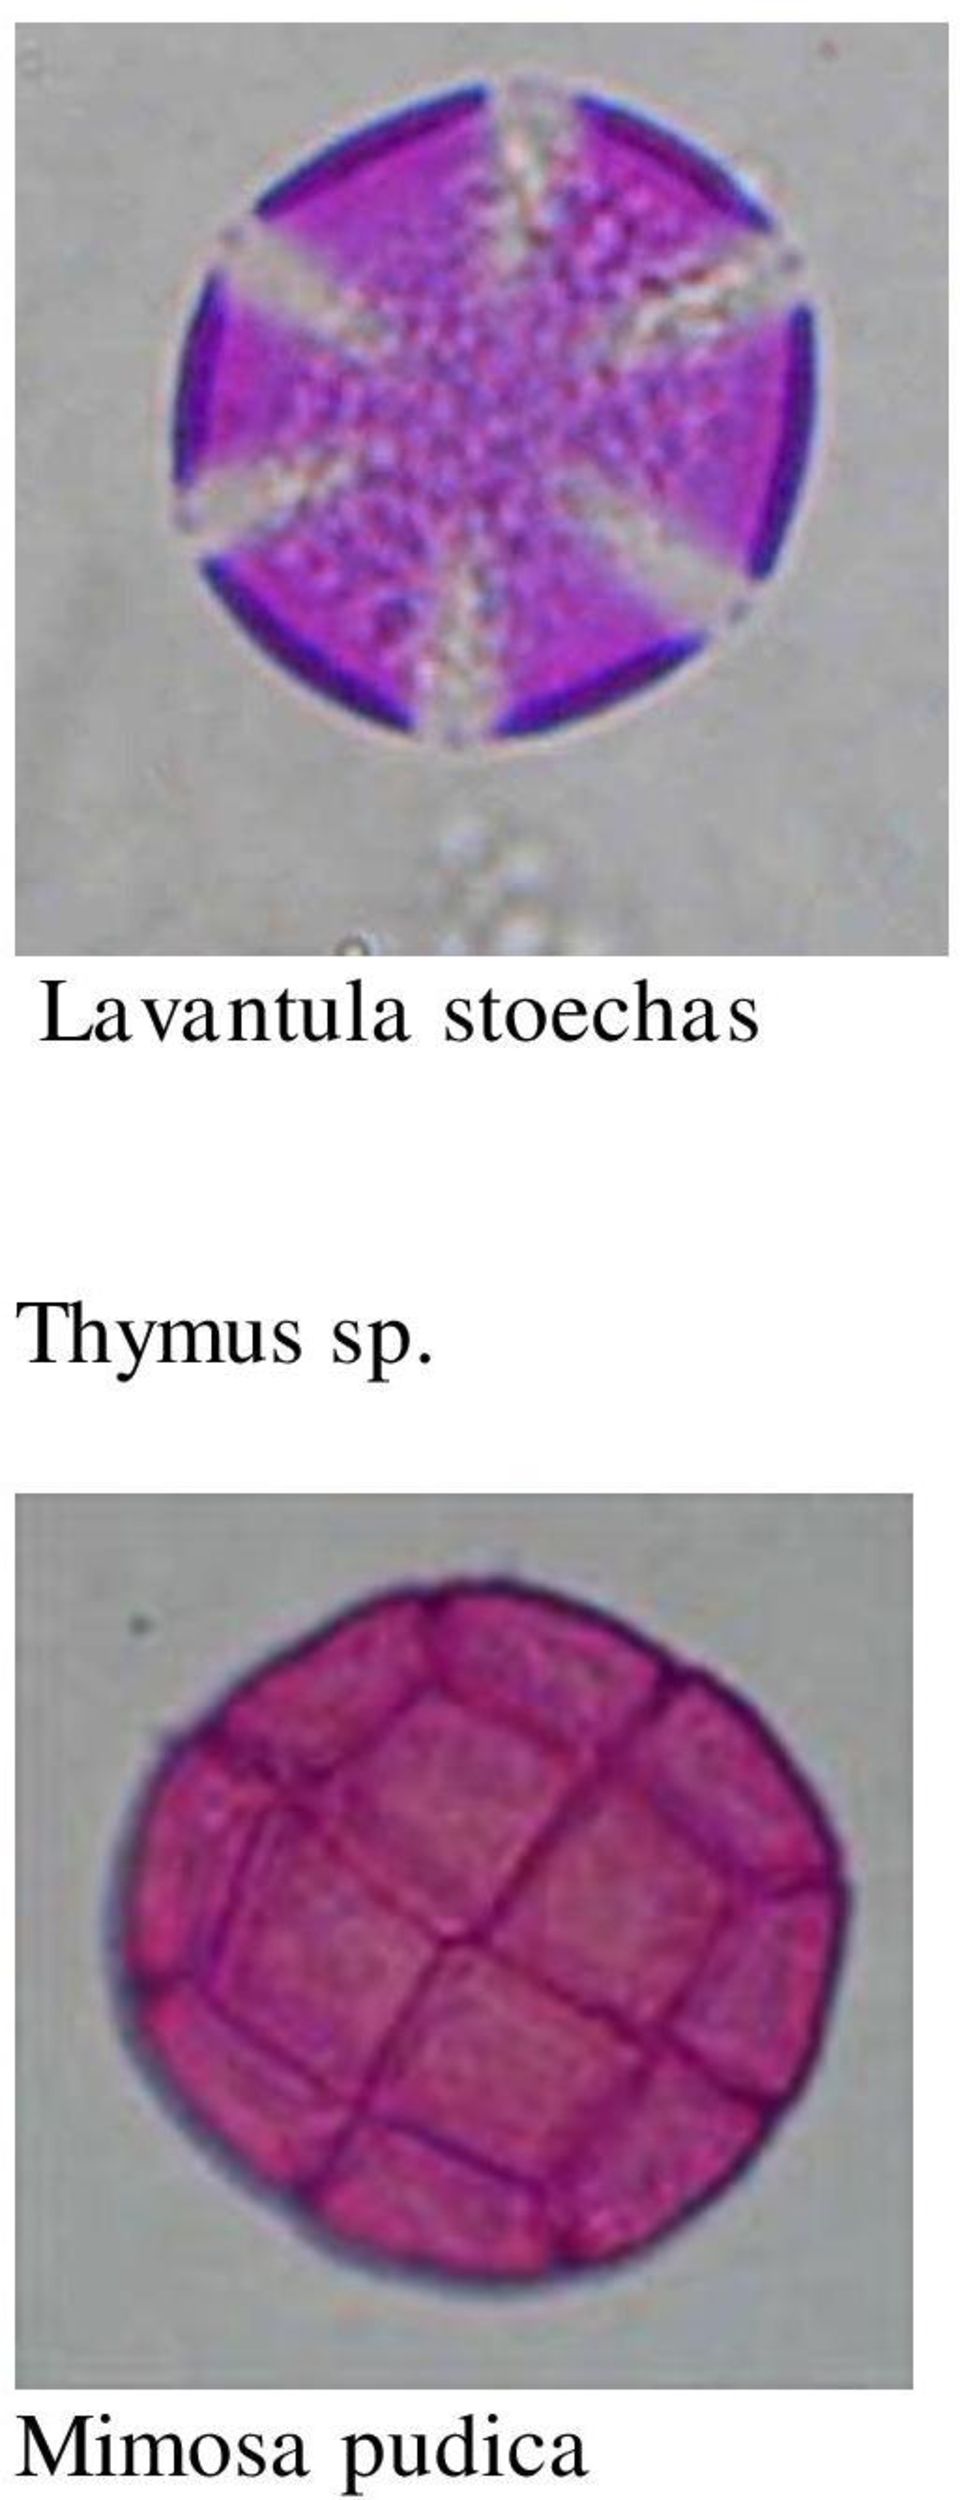 Thymus sp.